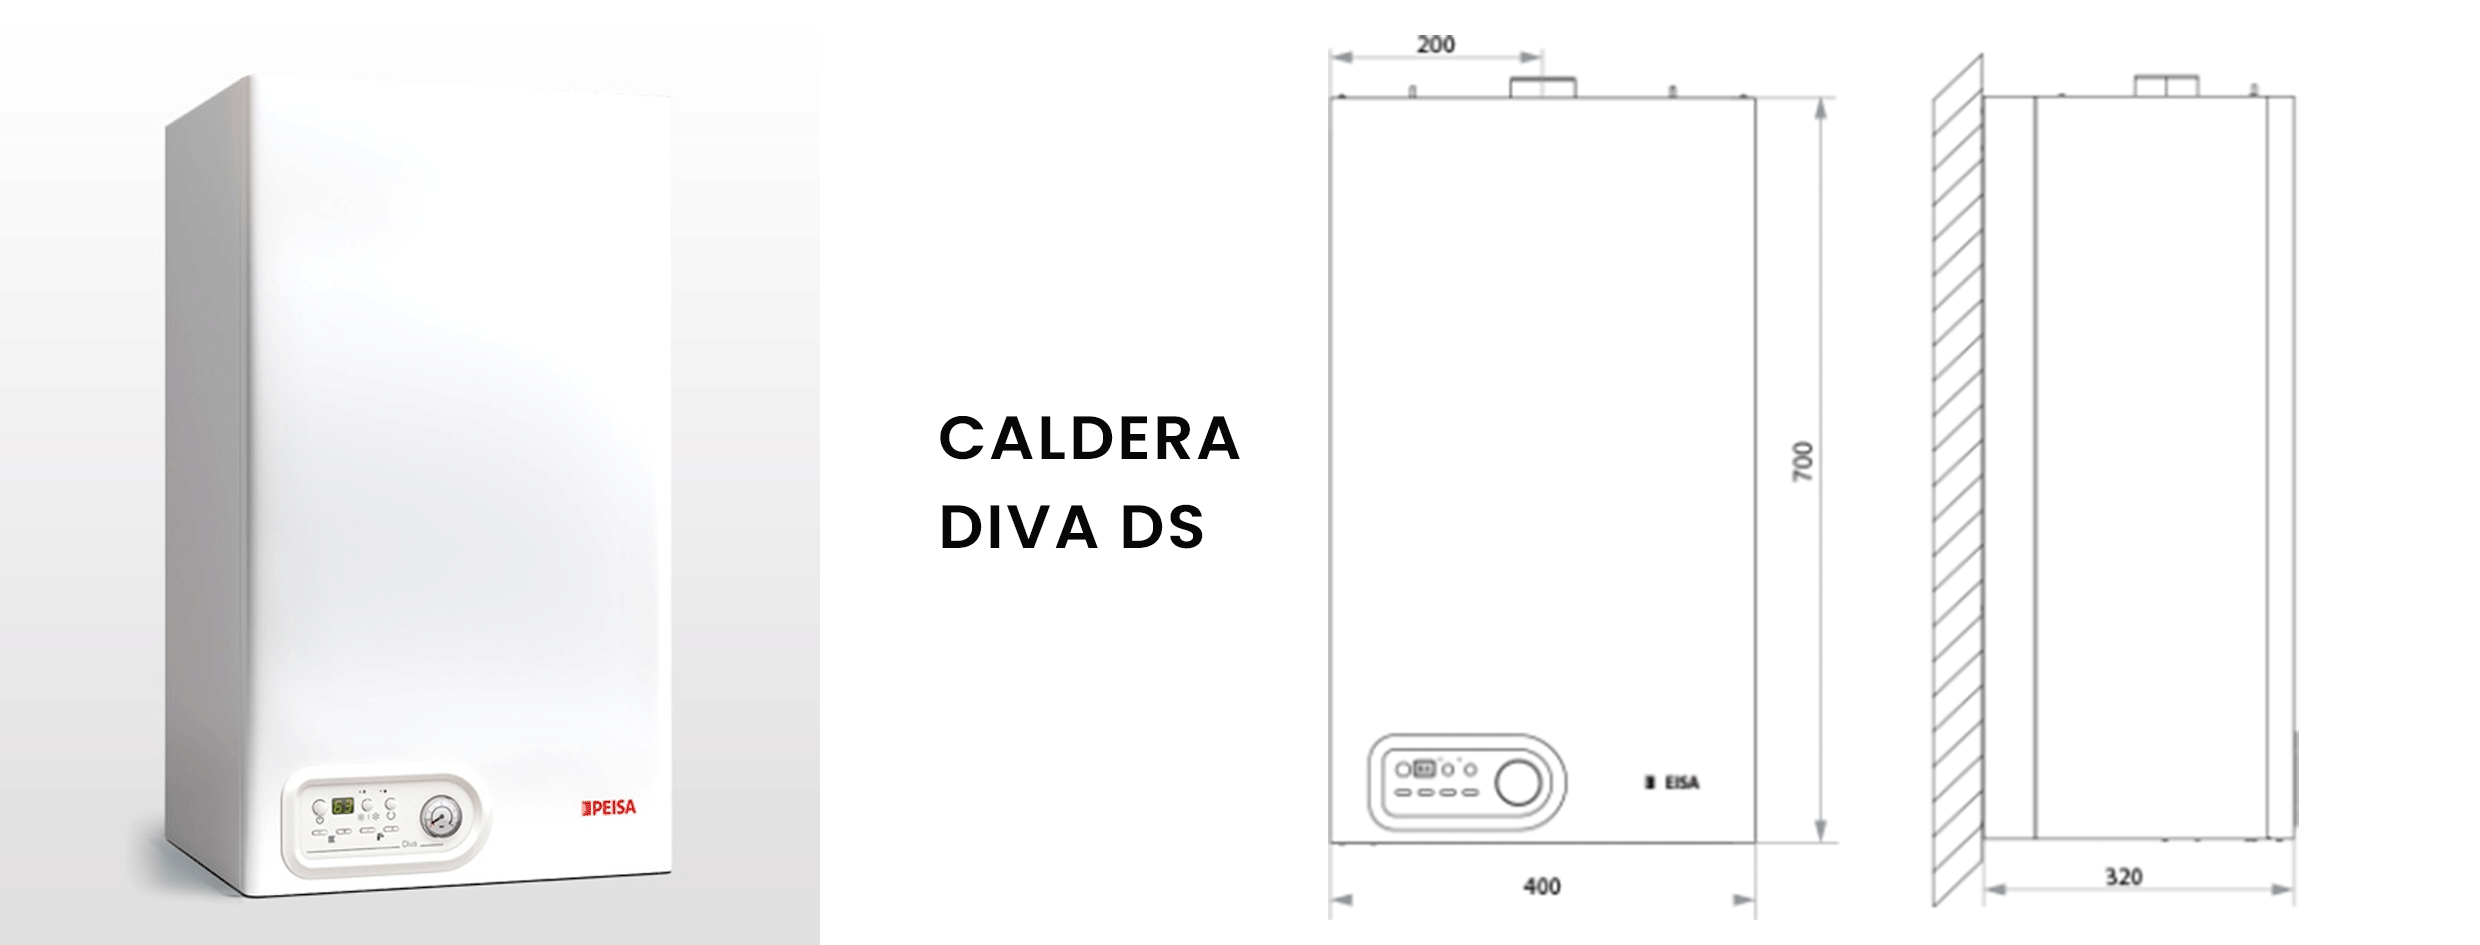 Caldera Diva DS